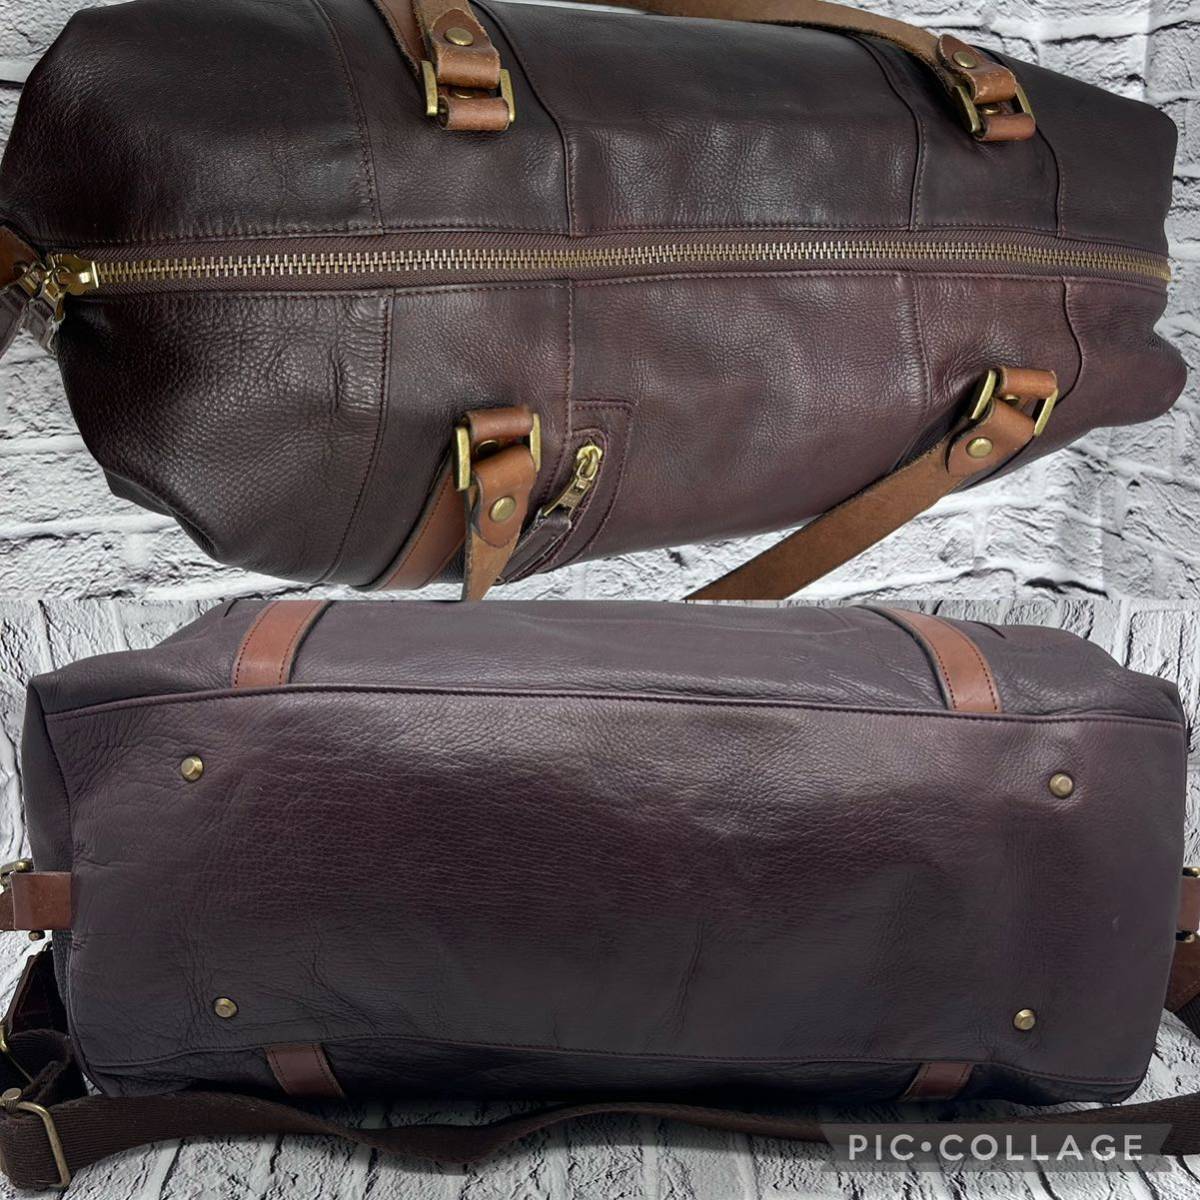 master-piece master-piece сумка "Boston bag" 2way плечо .. сумка на плечо все кожа телячья кожа Brown большая вместимость сделано в Японии дорожная сумка 